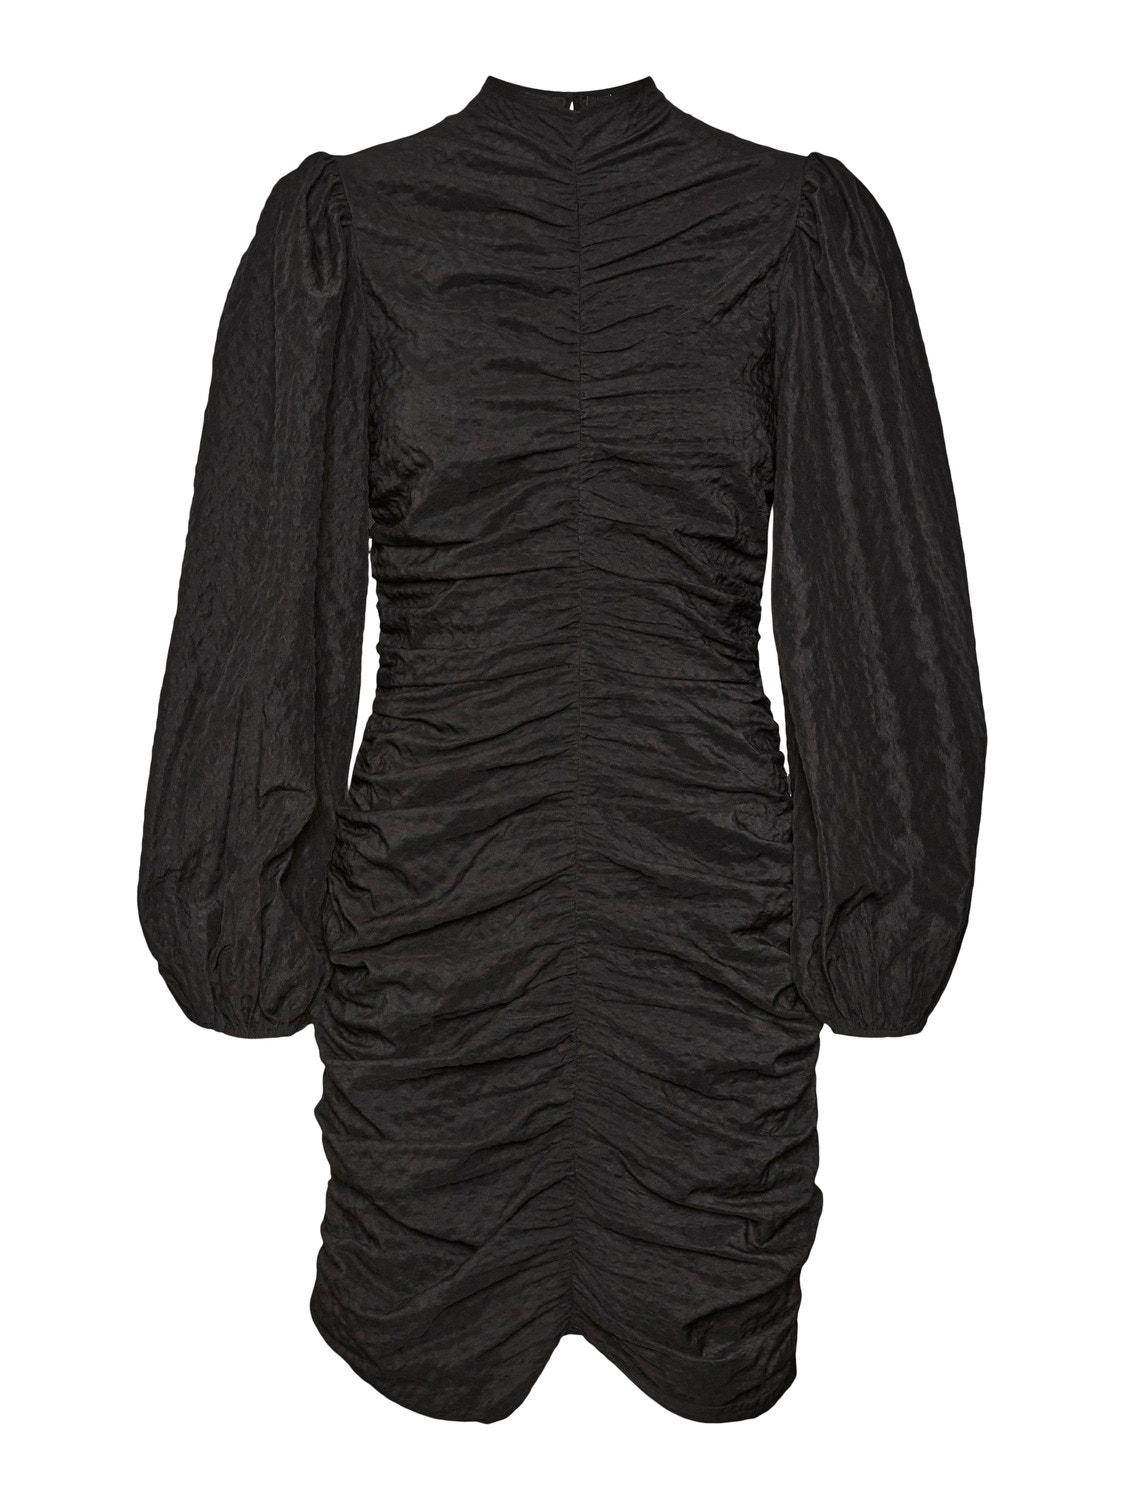 Vero Moda VMVERA Short dress -Black - 10302744